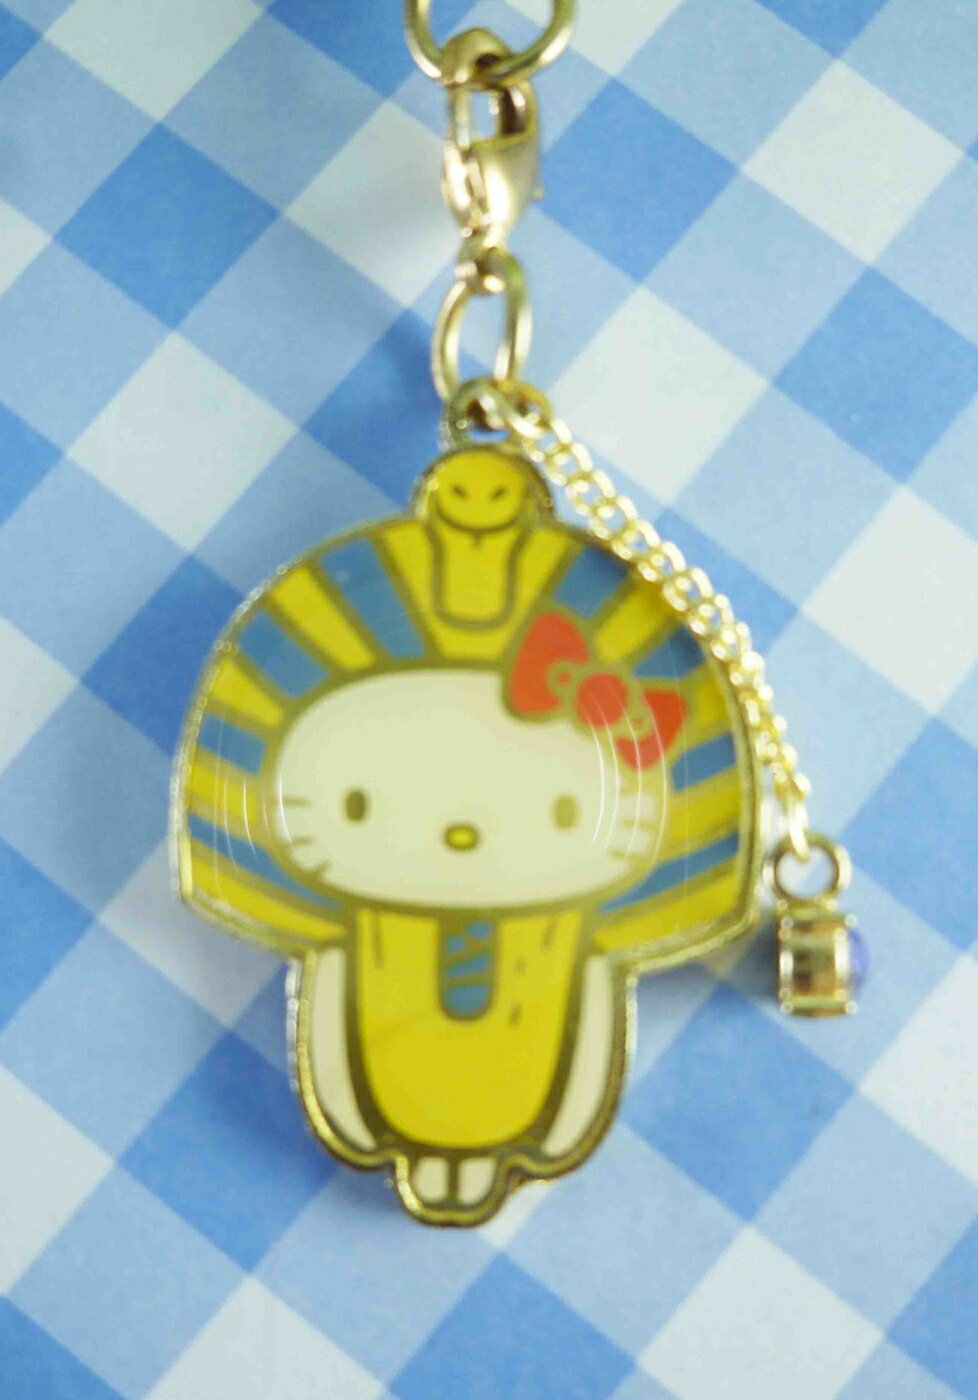 【震撼精品百貨】Hello Kitty 凱蒂貓 限定版手機吊飾-法老王(方吉) 震撼日式精品百貨